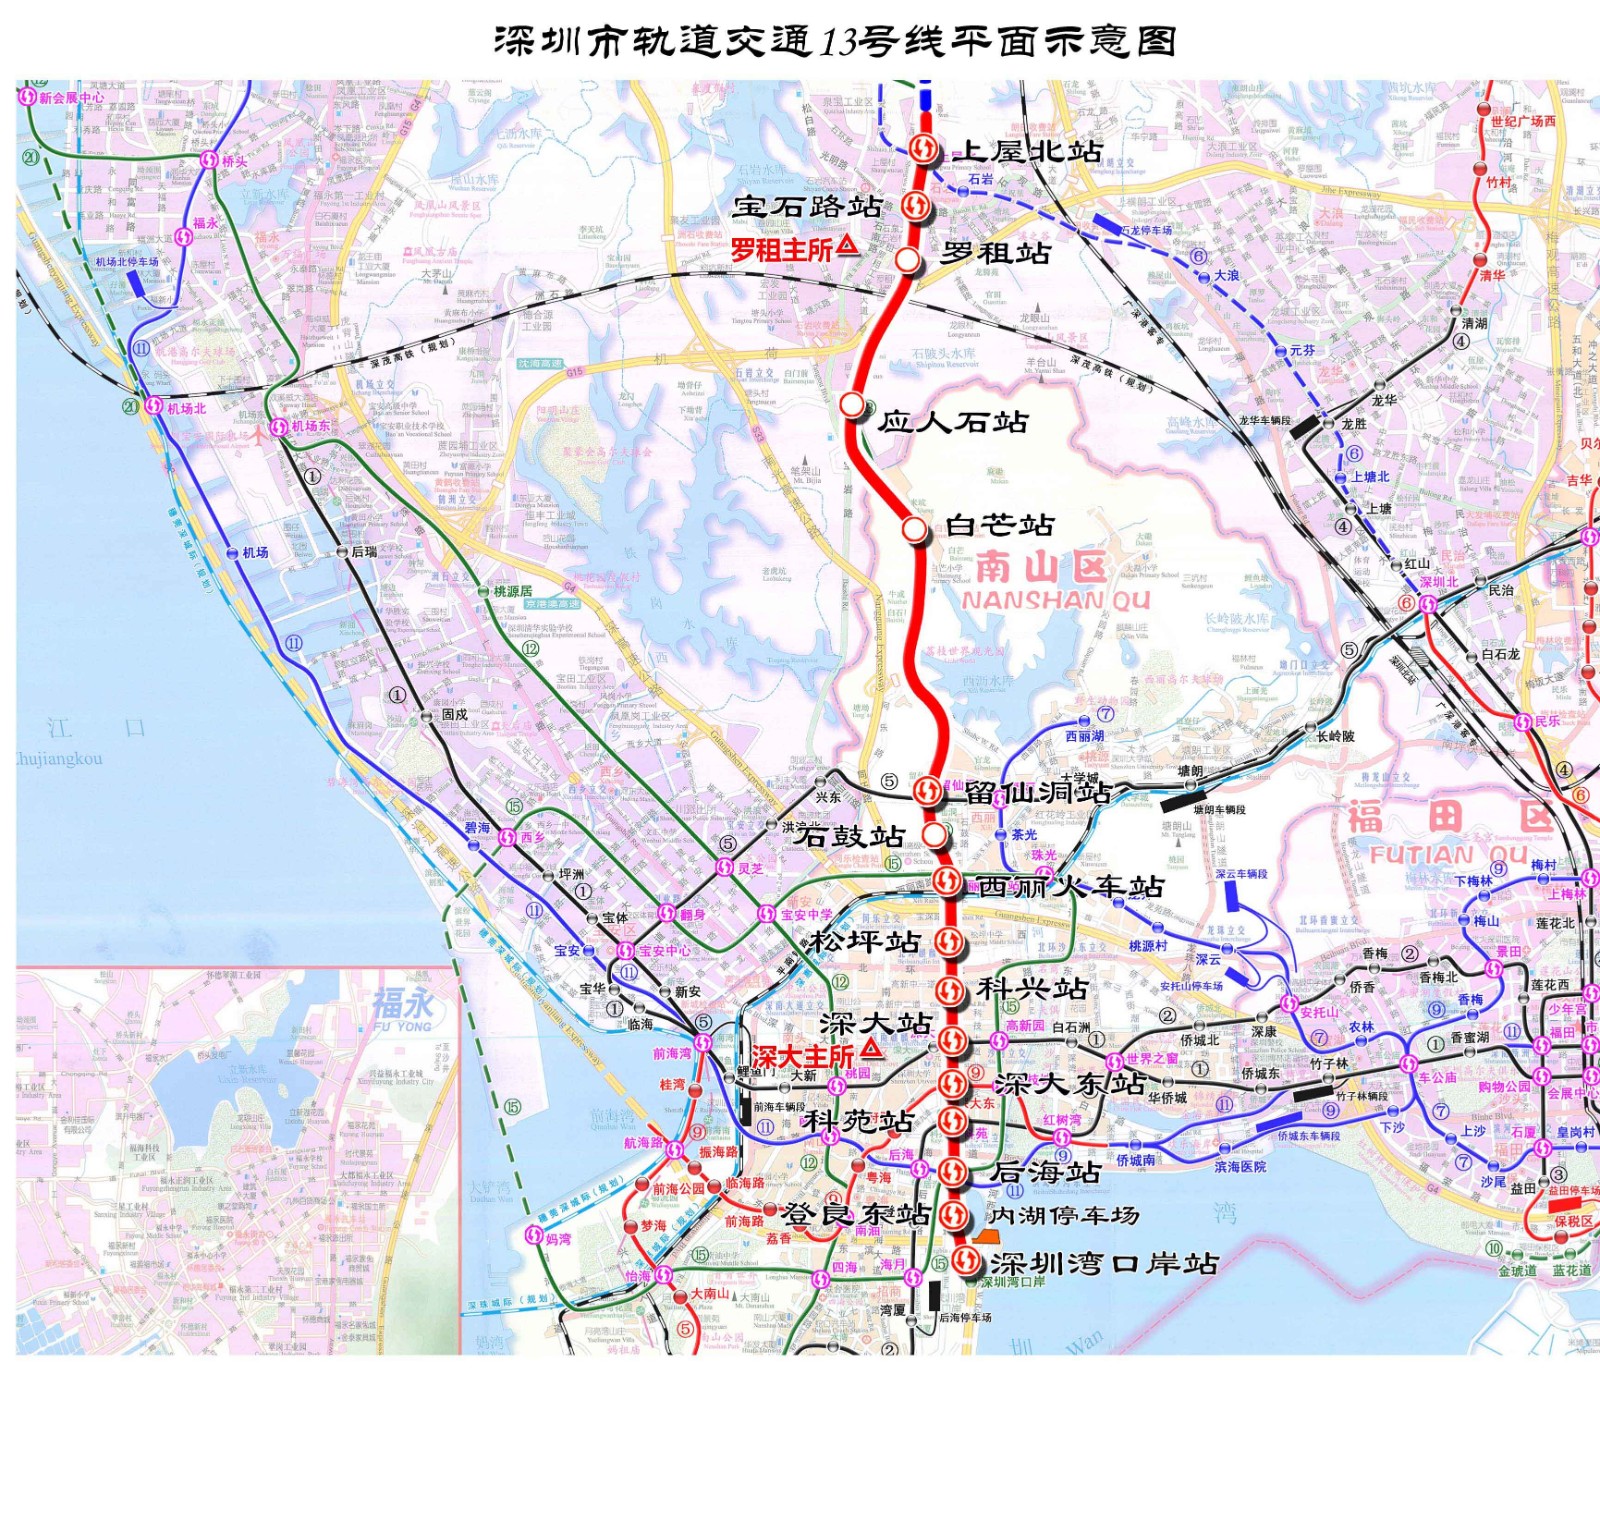 2021年深圳市轨道四期及四期调整相关线路站名规划公示详情_深圳之窗